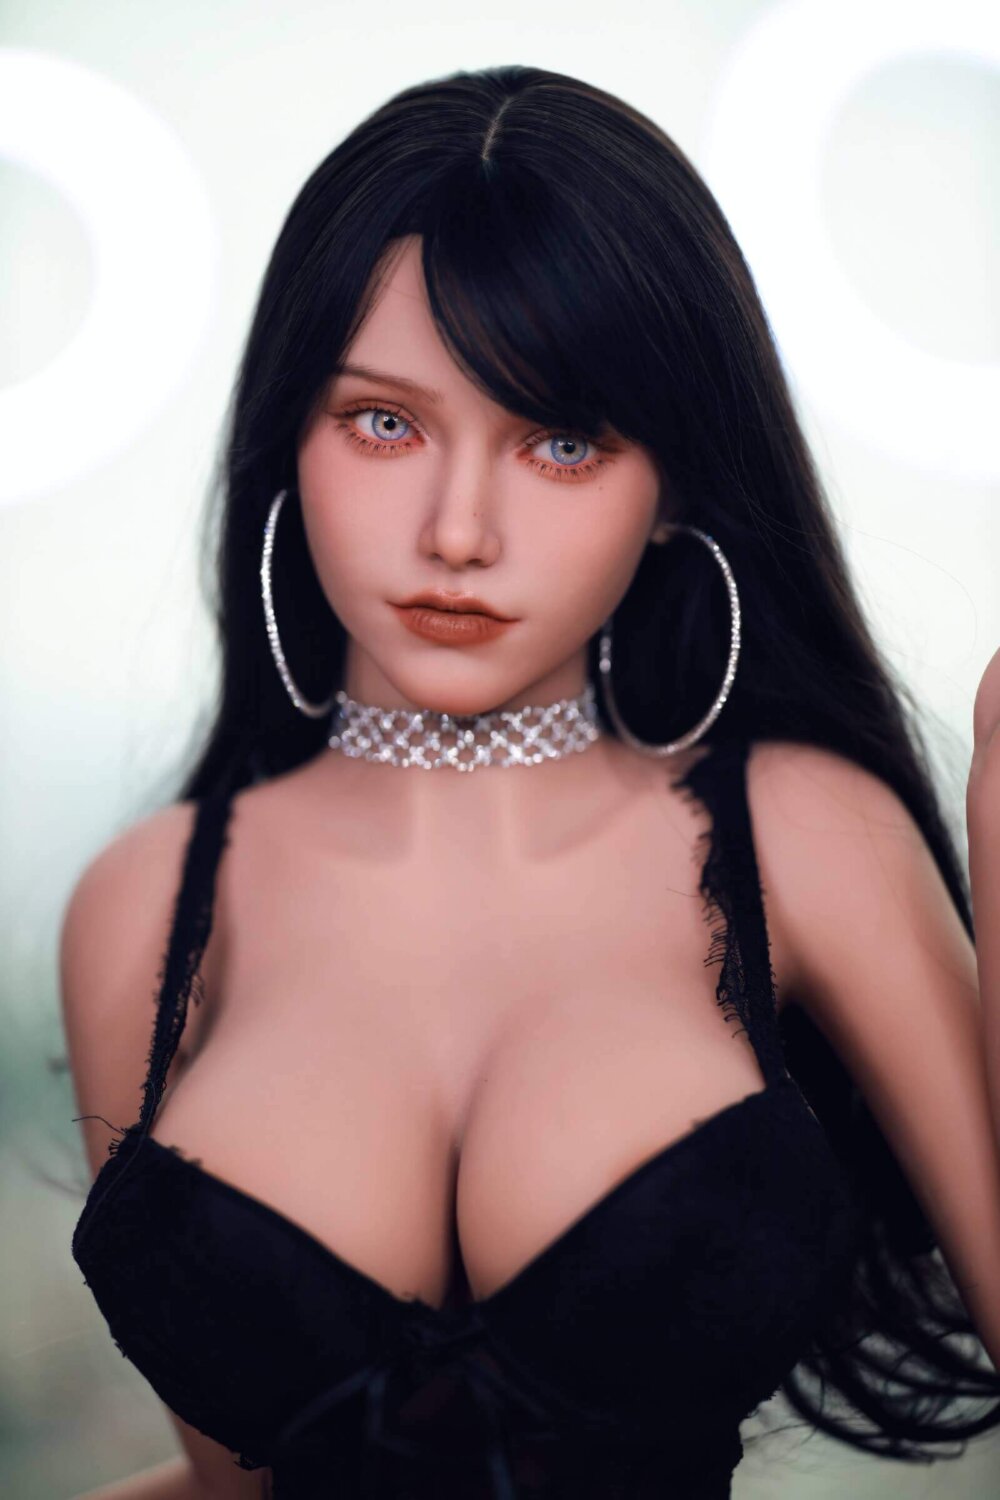 Sex Doll schwarzes Haar, große blaue Augen, silberne Halskette, große runde Ohrringe, schwarzes Oberteil.